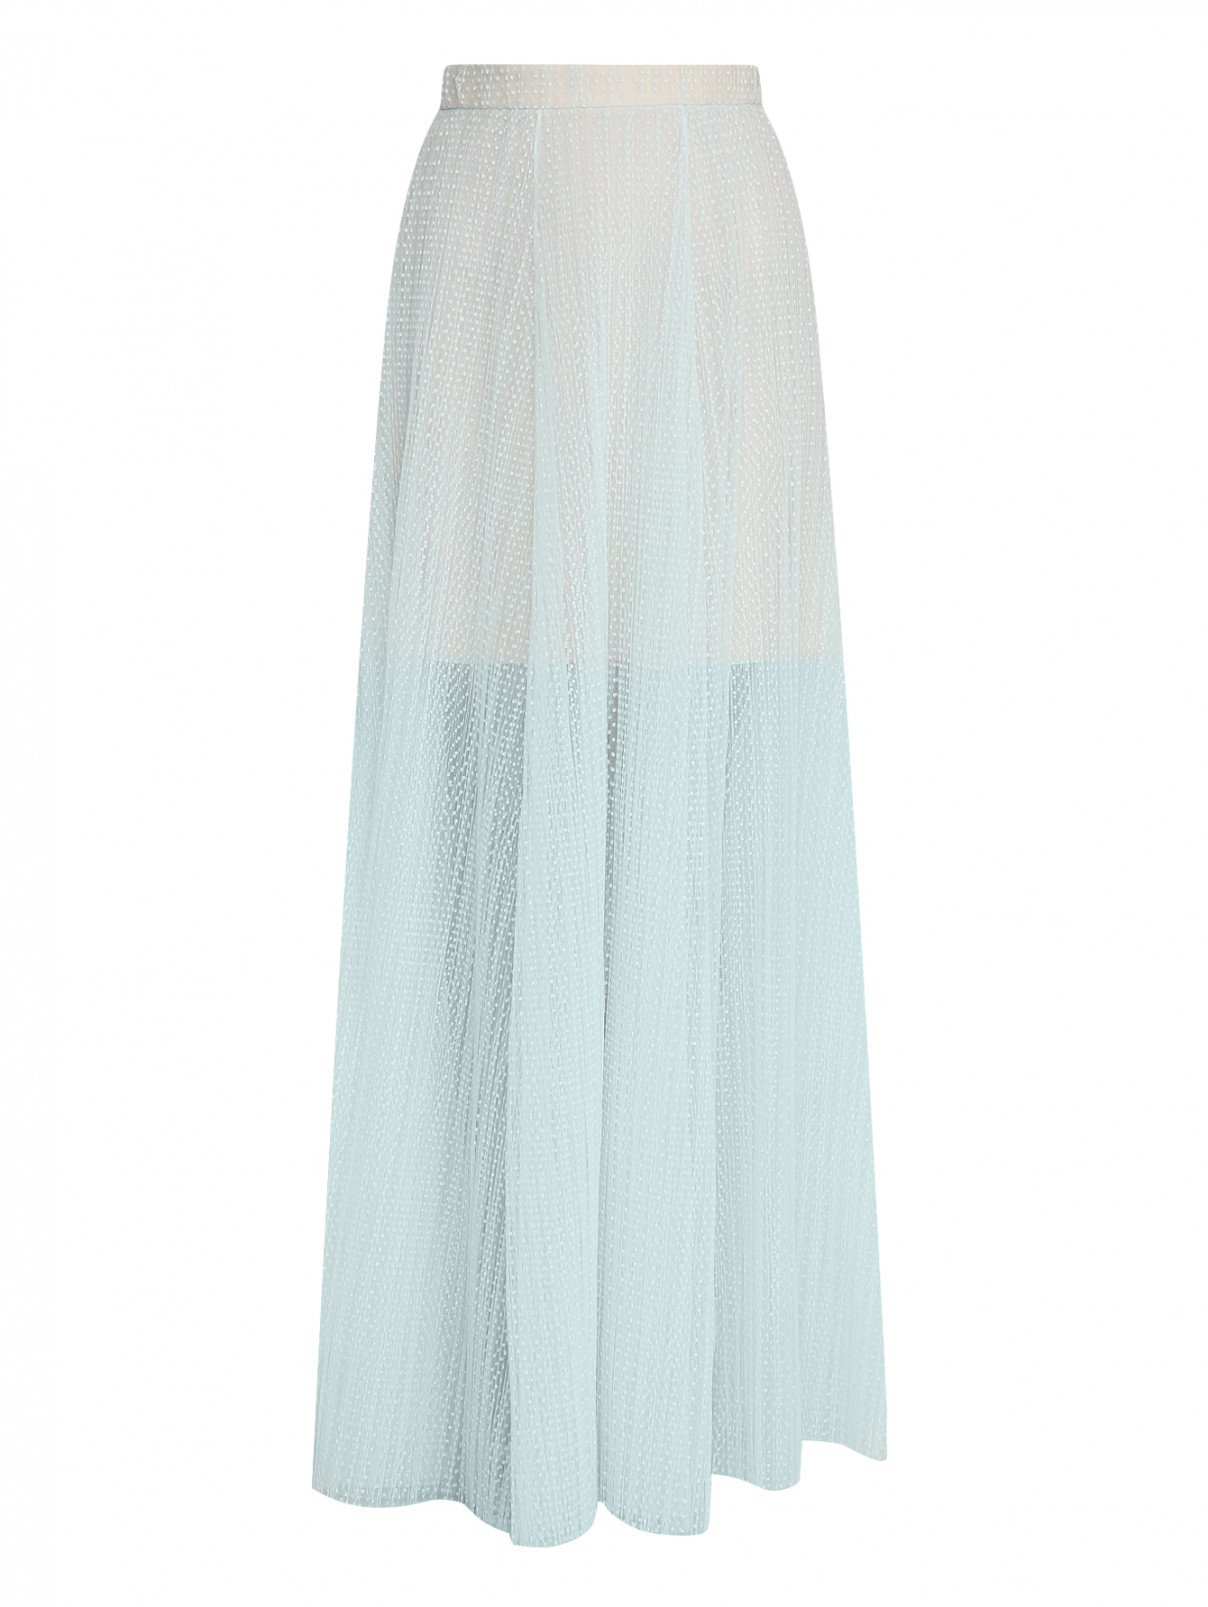 Полупрозрачная юбка-макси с узором "горох" A La Russe  –  Общий вид  – Цвет:  Зеленый